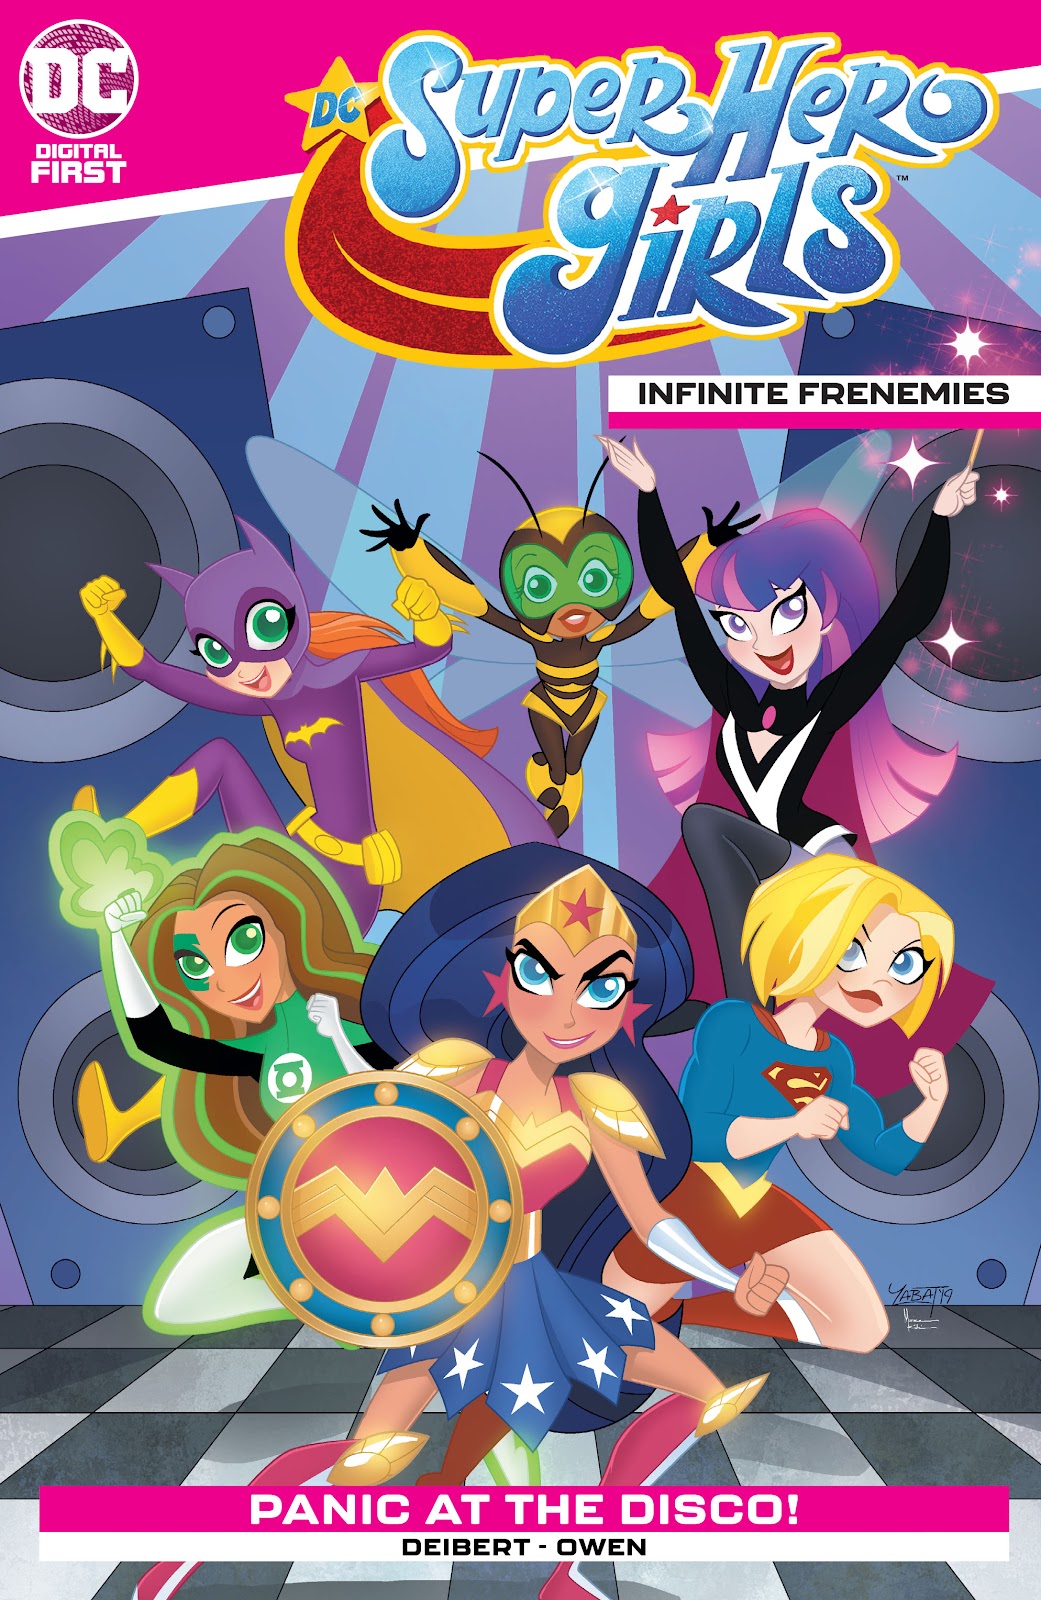 DC Super Hero Girls: Infinite Frenemies issue 2 - Page 1